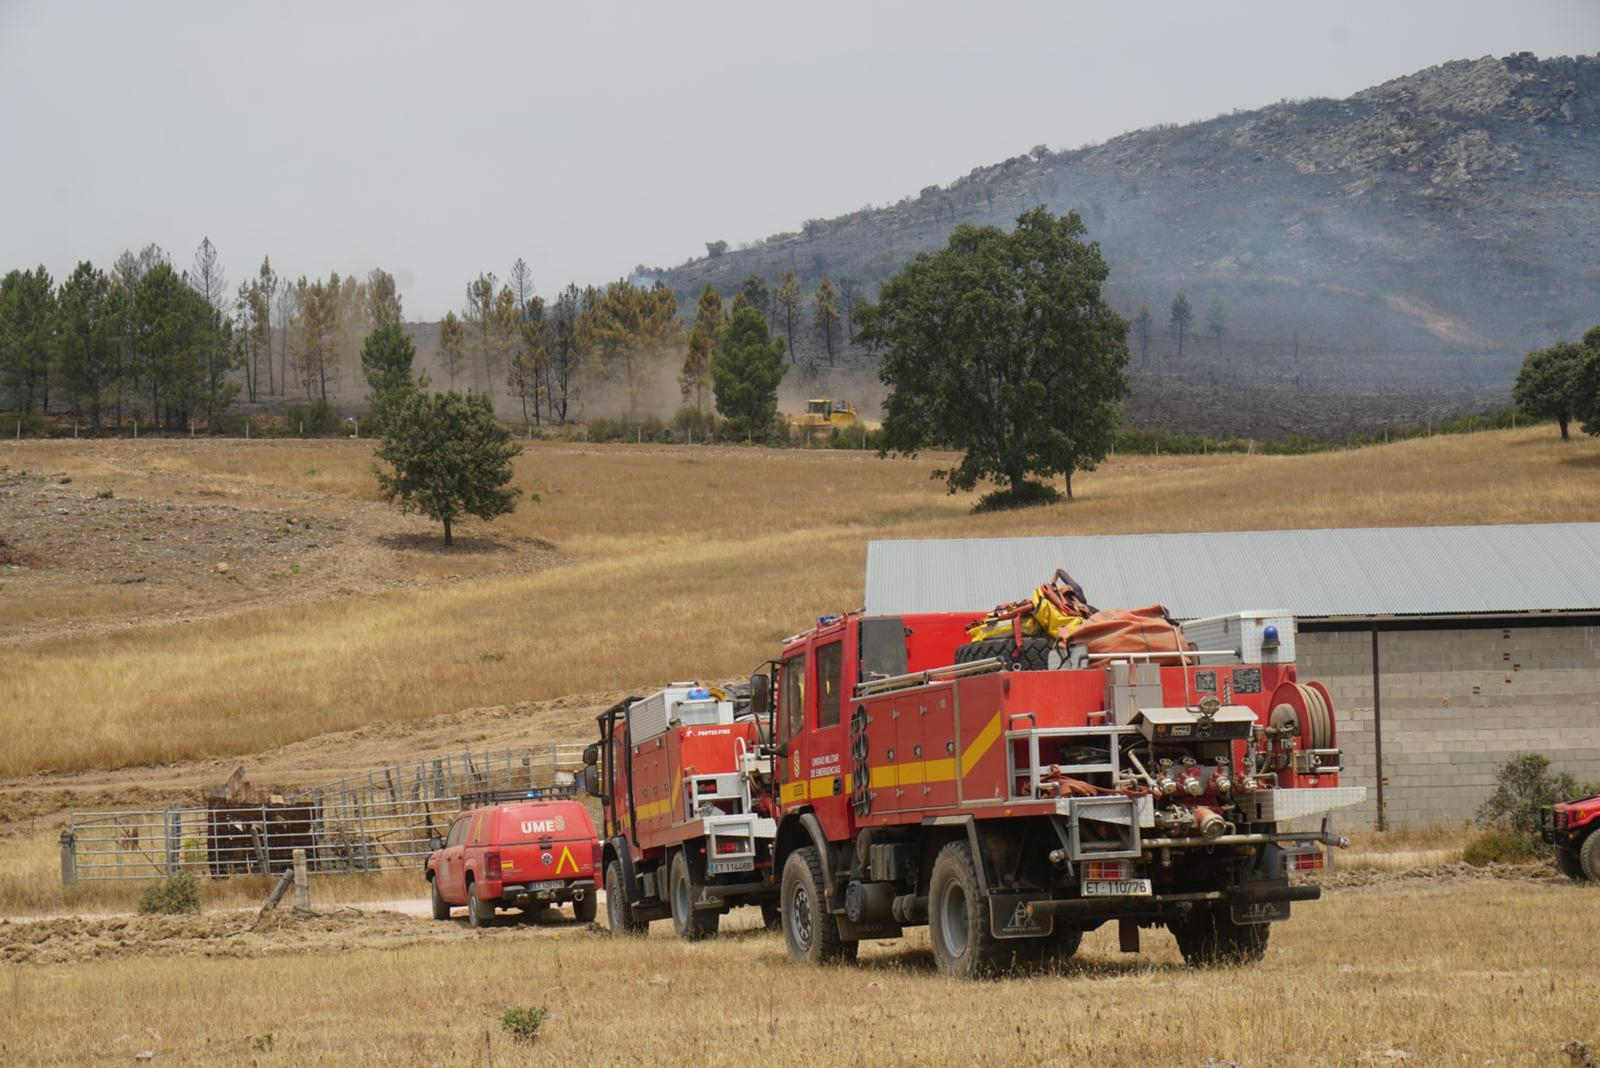 Foto 3 - El incendio ha afectado al triple de hectáreas en Salamanca que en Cáceres